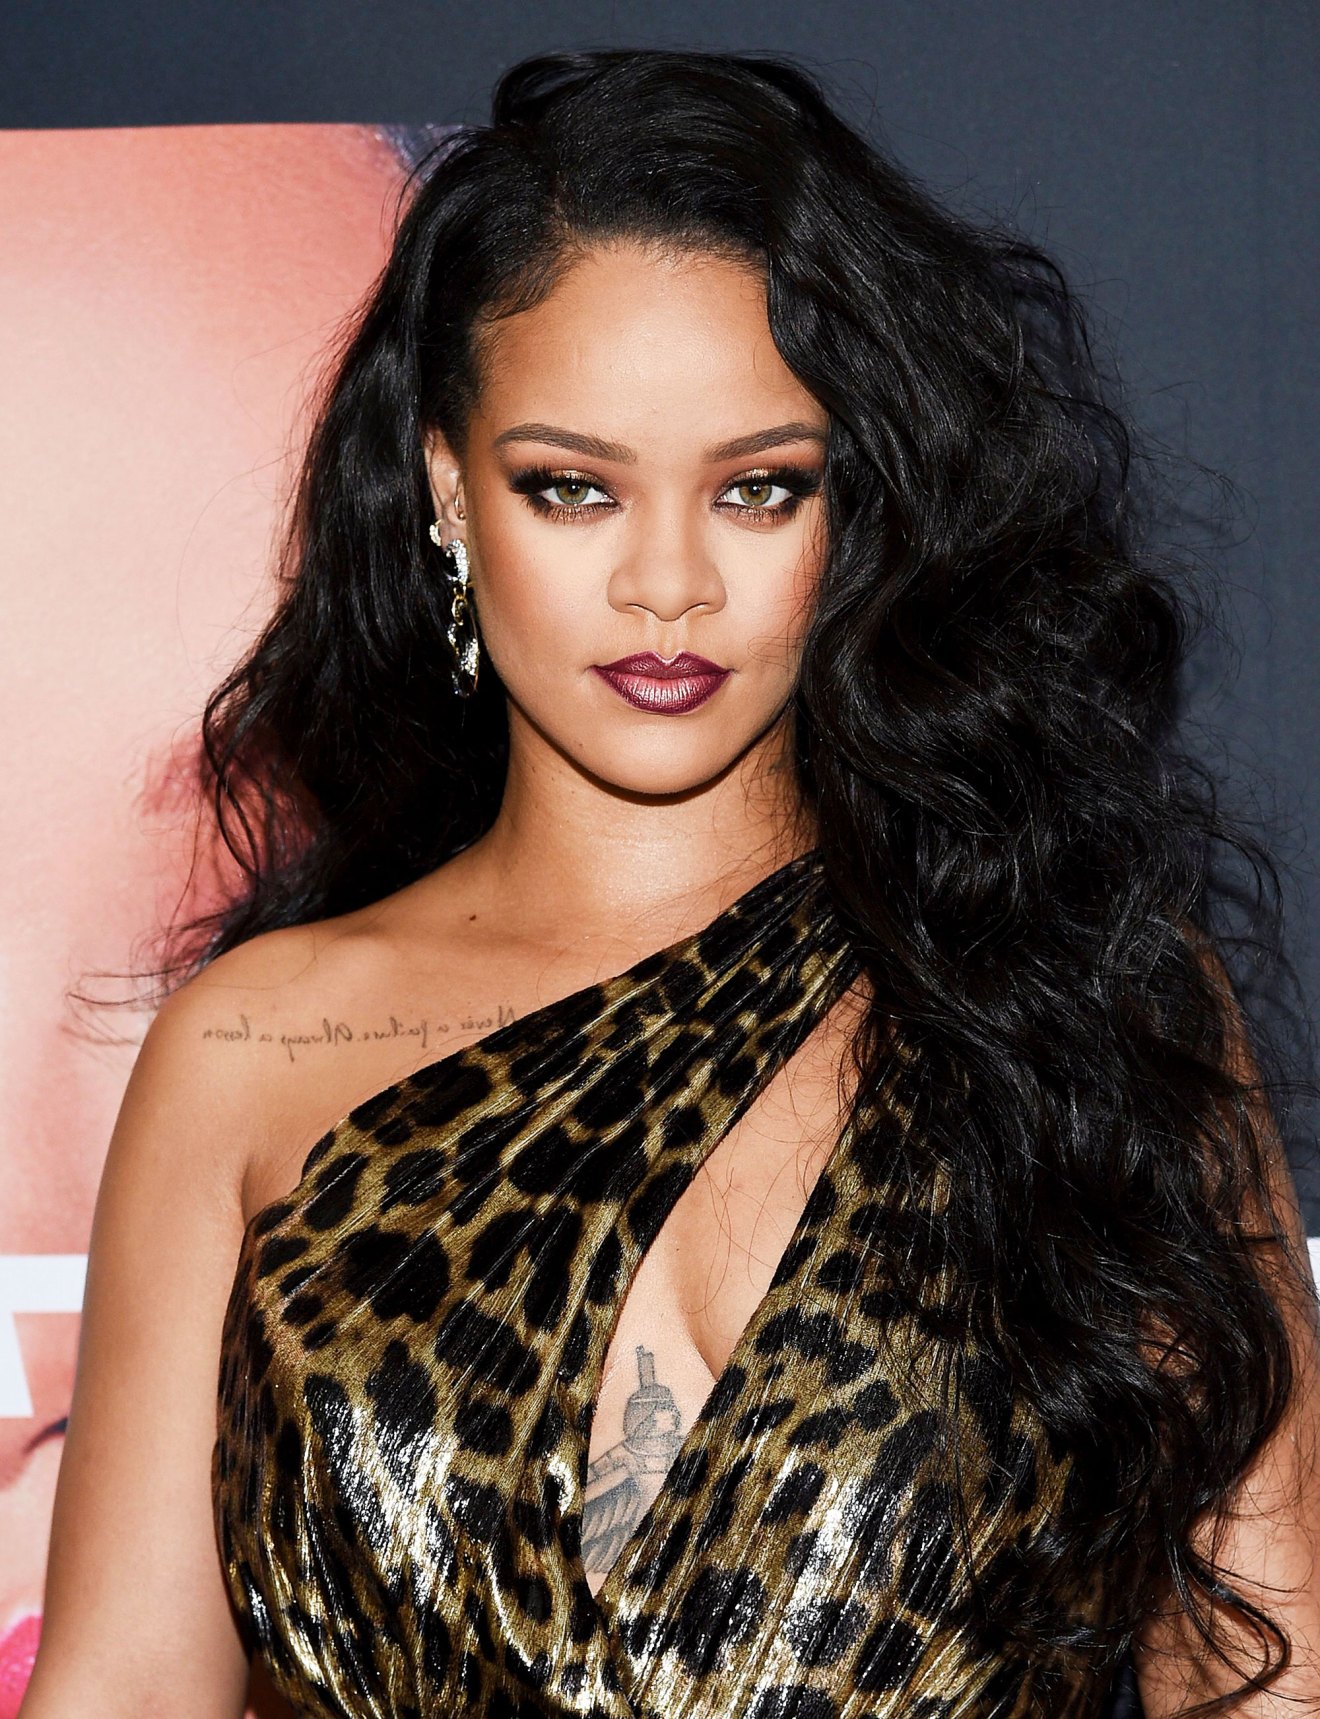 Rihanna's Fenty Skin Launch Release Date